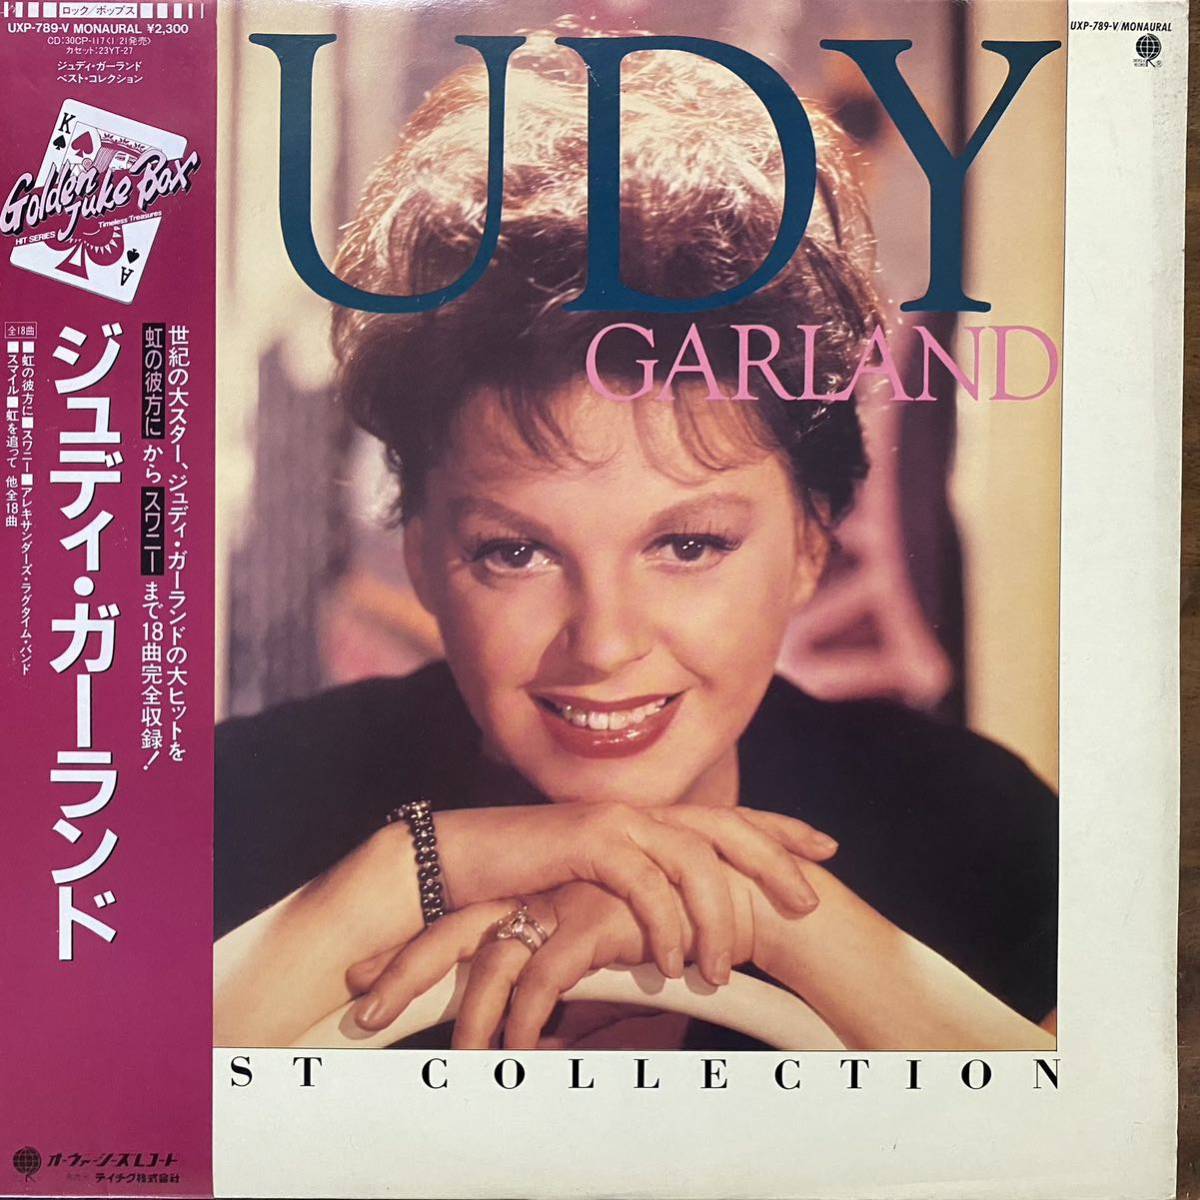 見本盤 国内 帯 LPジュディ・ガーランド JUDY GARLAND BEST COLLECTION (UXP-789-V)の画像1